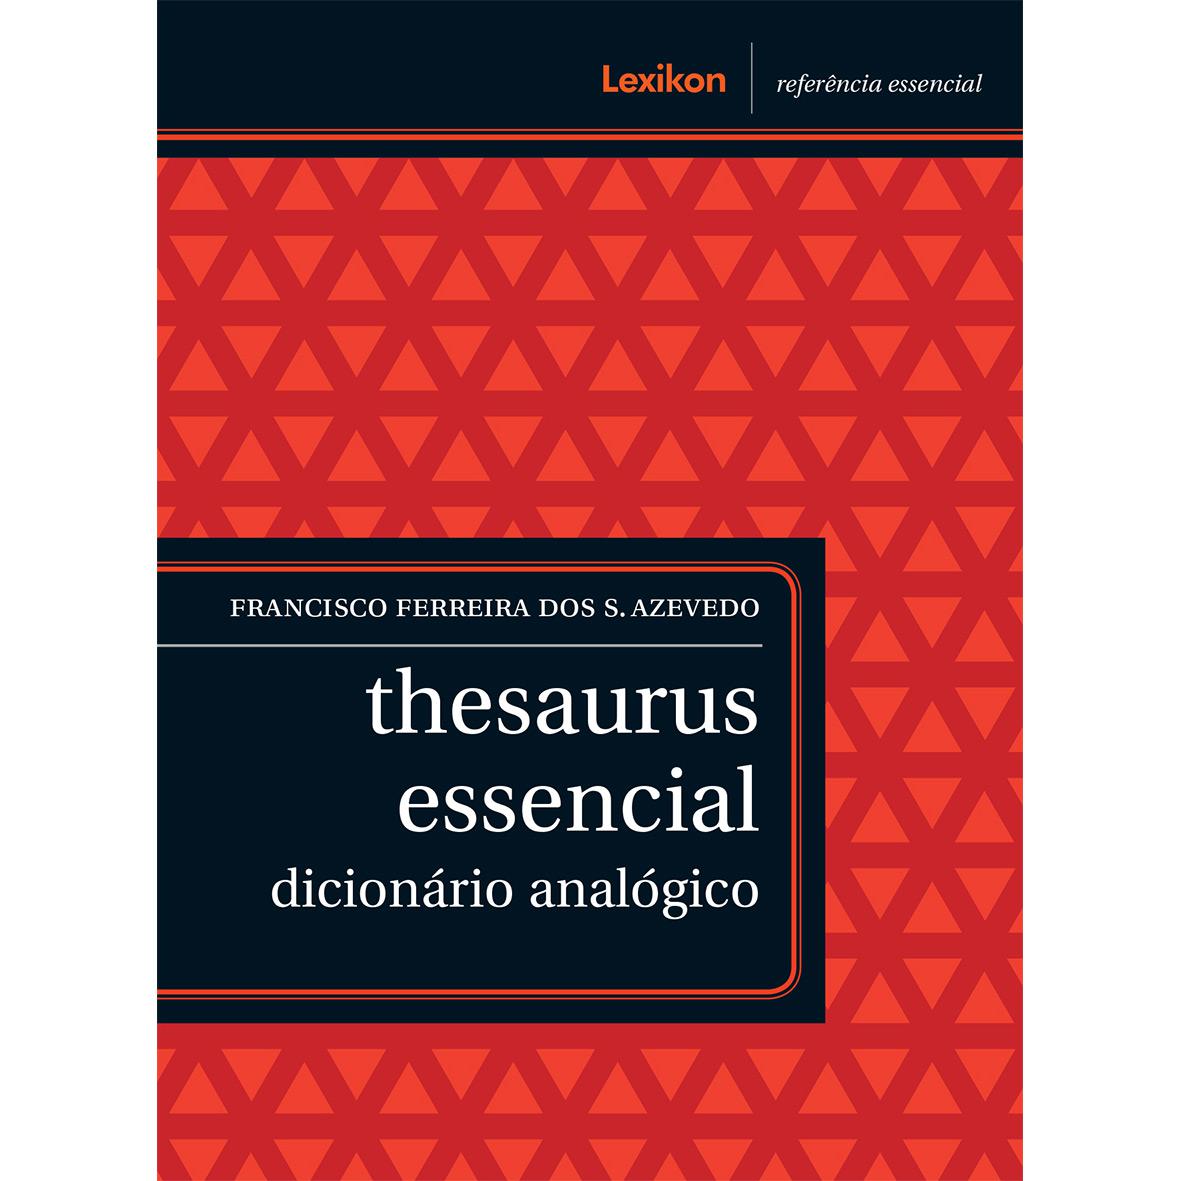 Livro - Thesaurus Essencial é bom? Vale a pena?